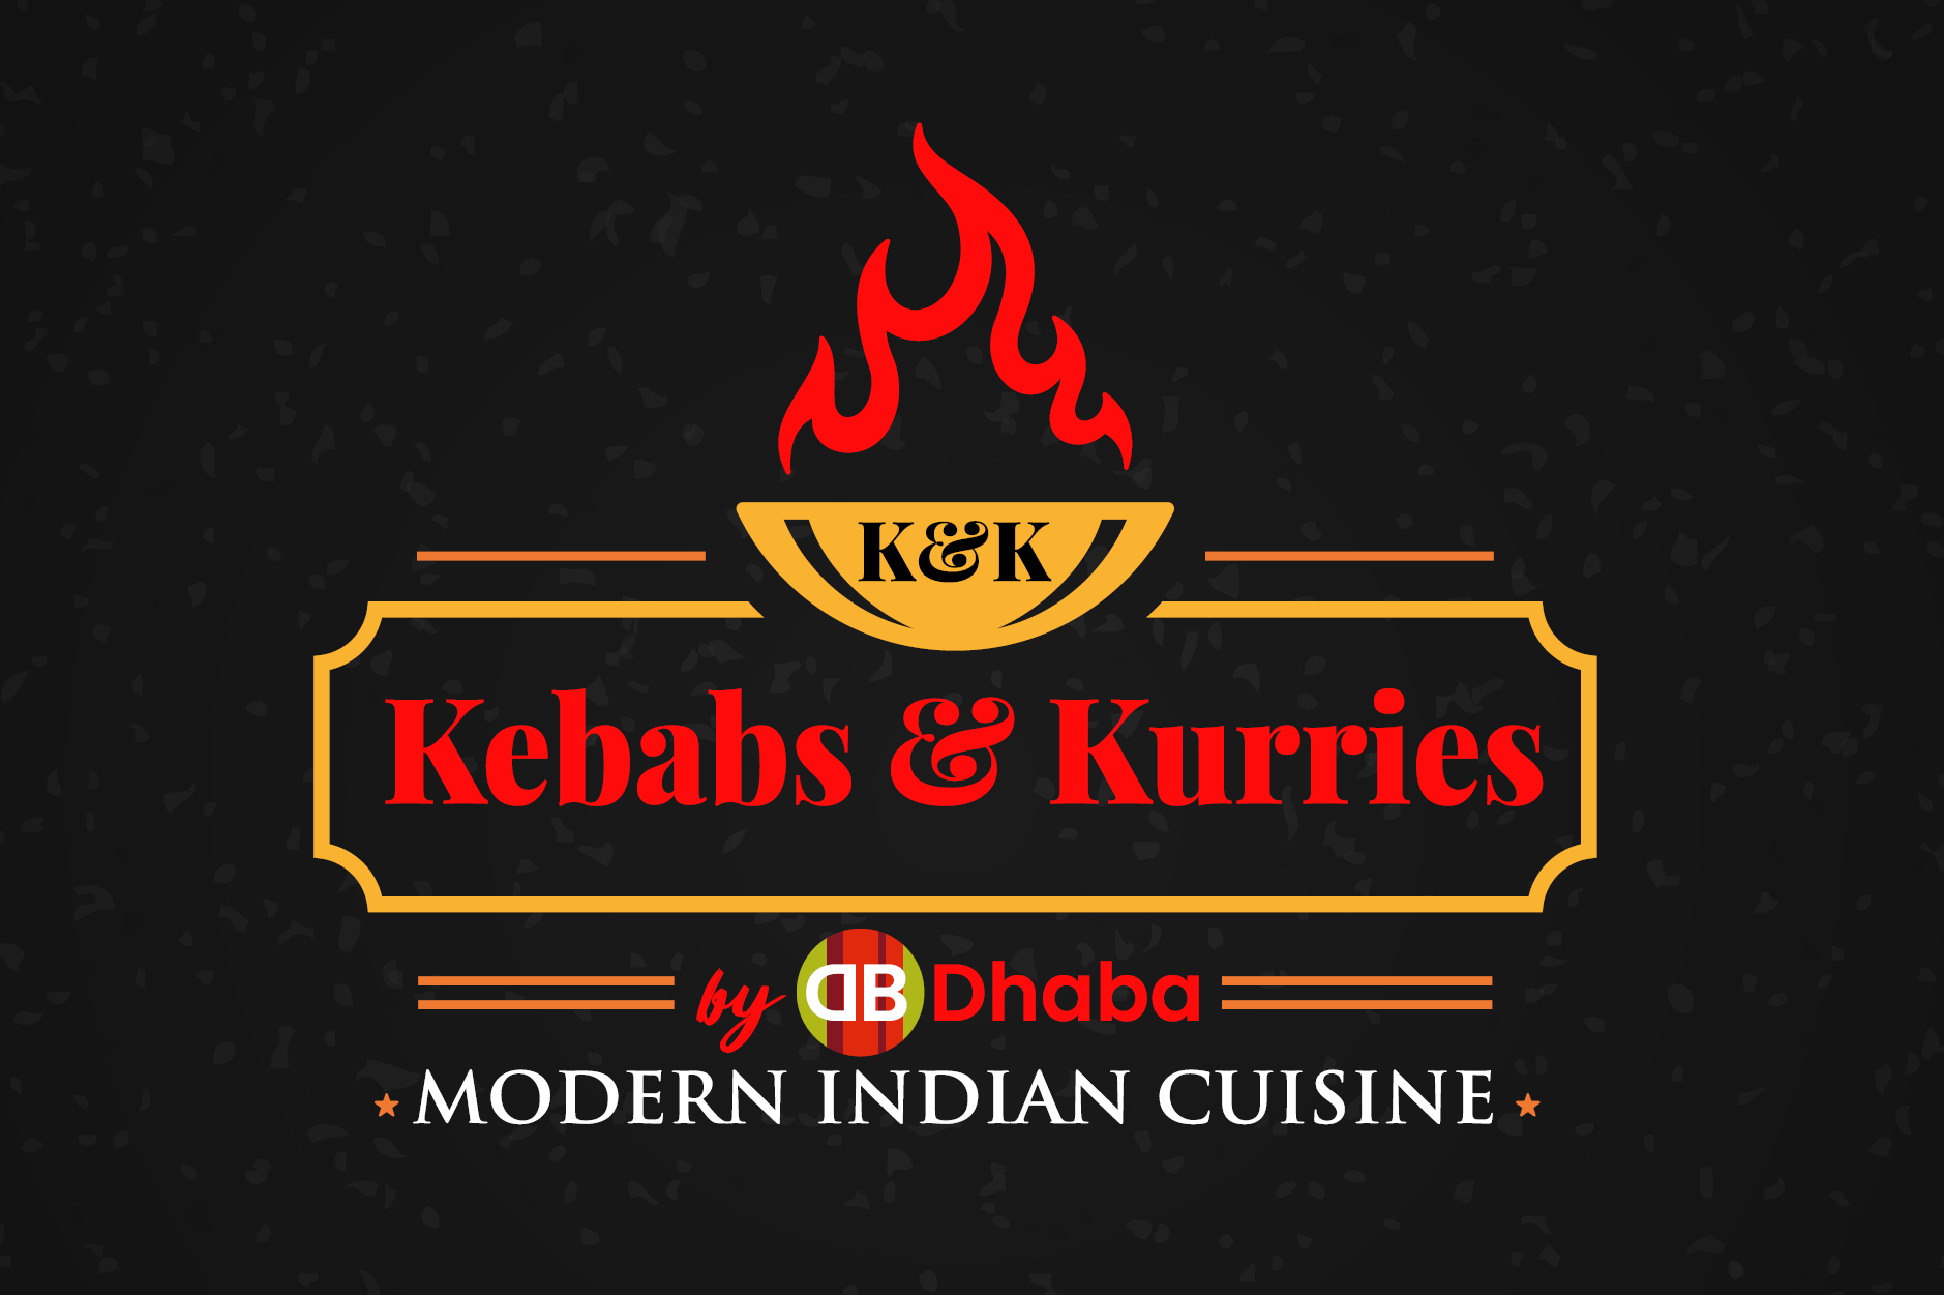 Kebabs & Kurries By Dhaba Kebabs & Kurries by Dhaba